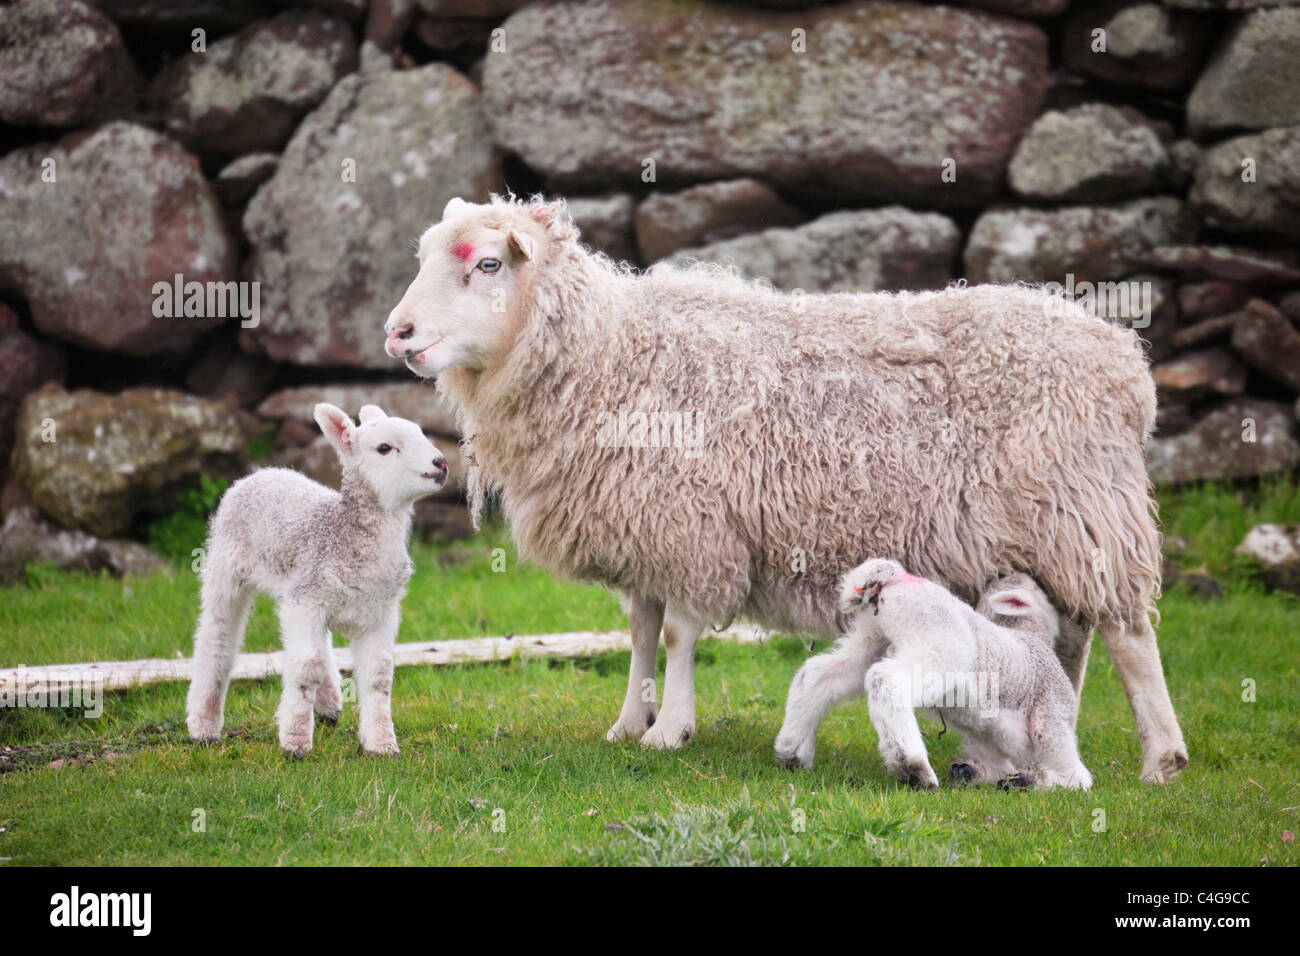 Avec deux jeunes brebis moutons agneaux nouveau-nés jumeaux par un mur de pierre dans la campagne écossaise au printemps ou au début de l'été. Îles Shetland, Écosse Royaume-Uni Grande-Bretagne Banque D'Images